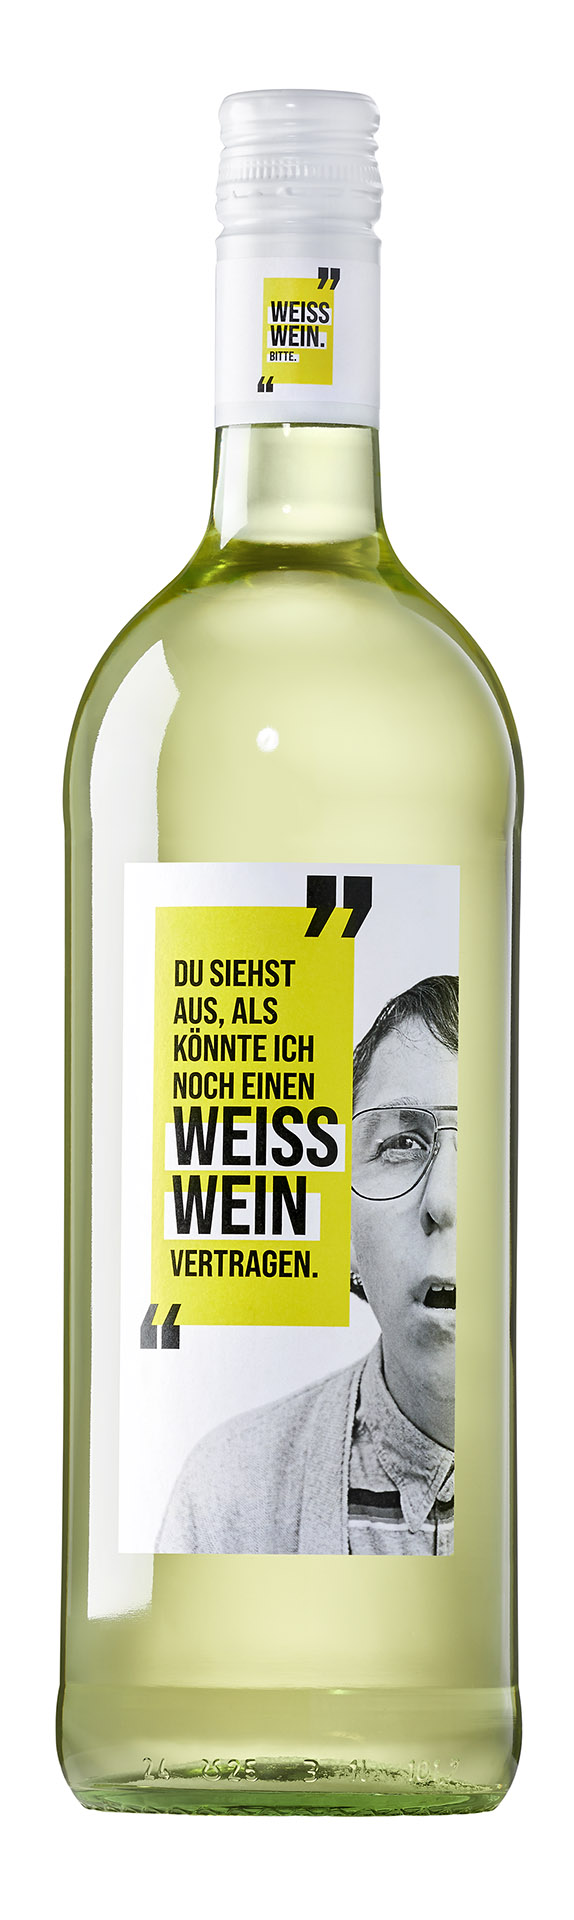 Weisswein Qualitätswein "the new wine experts"